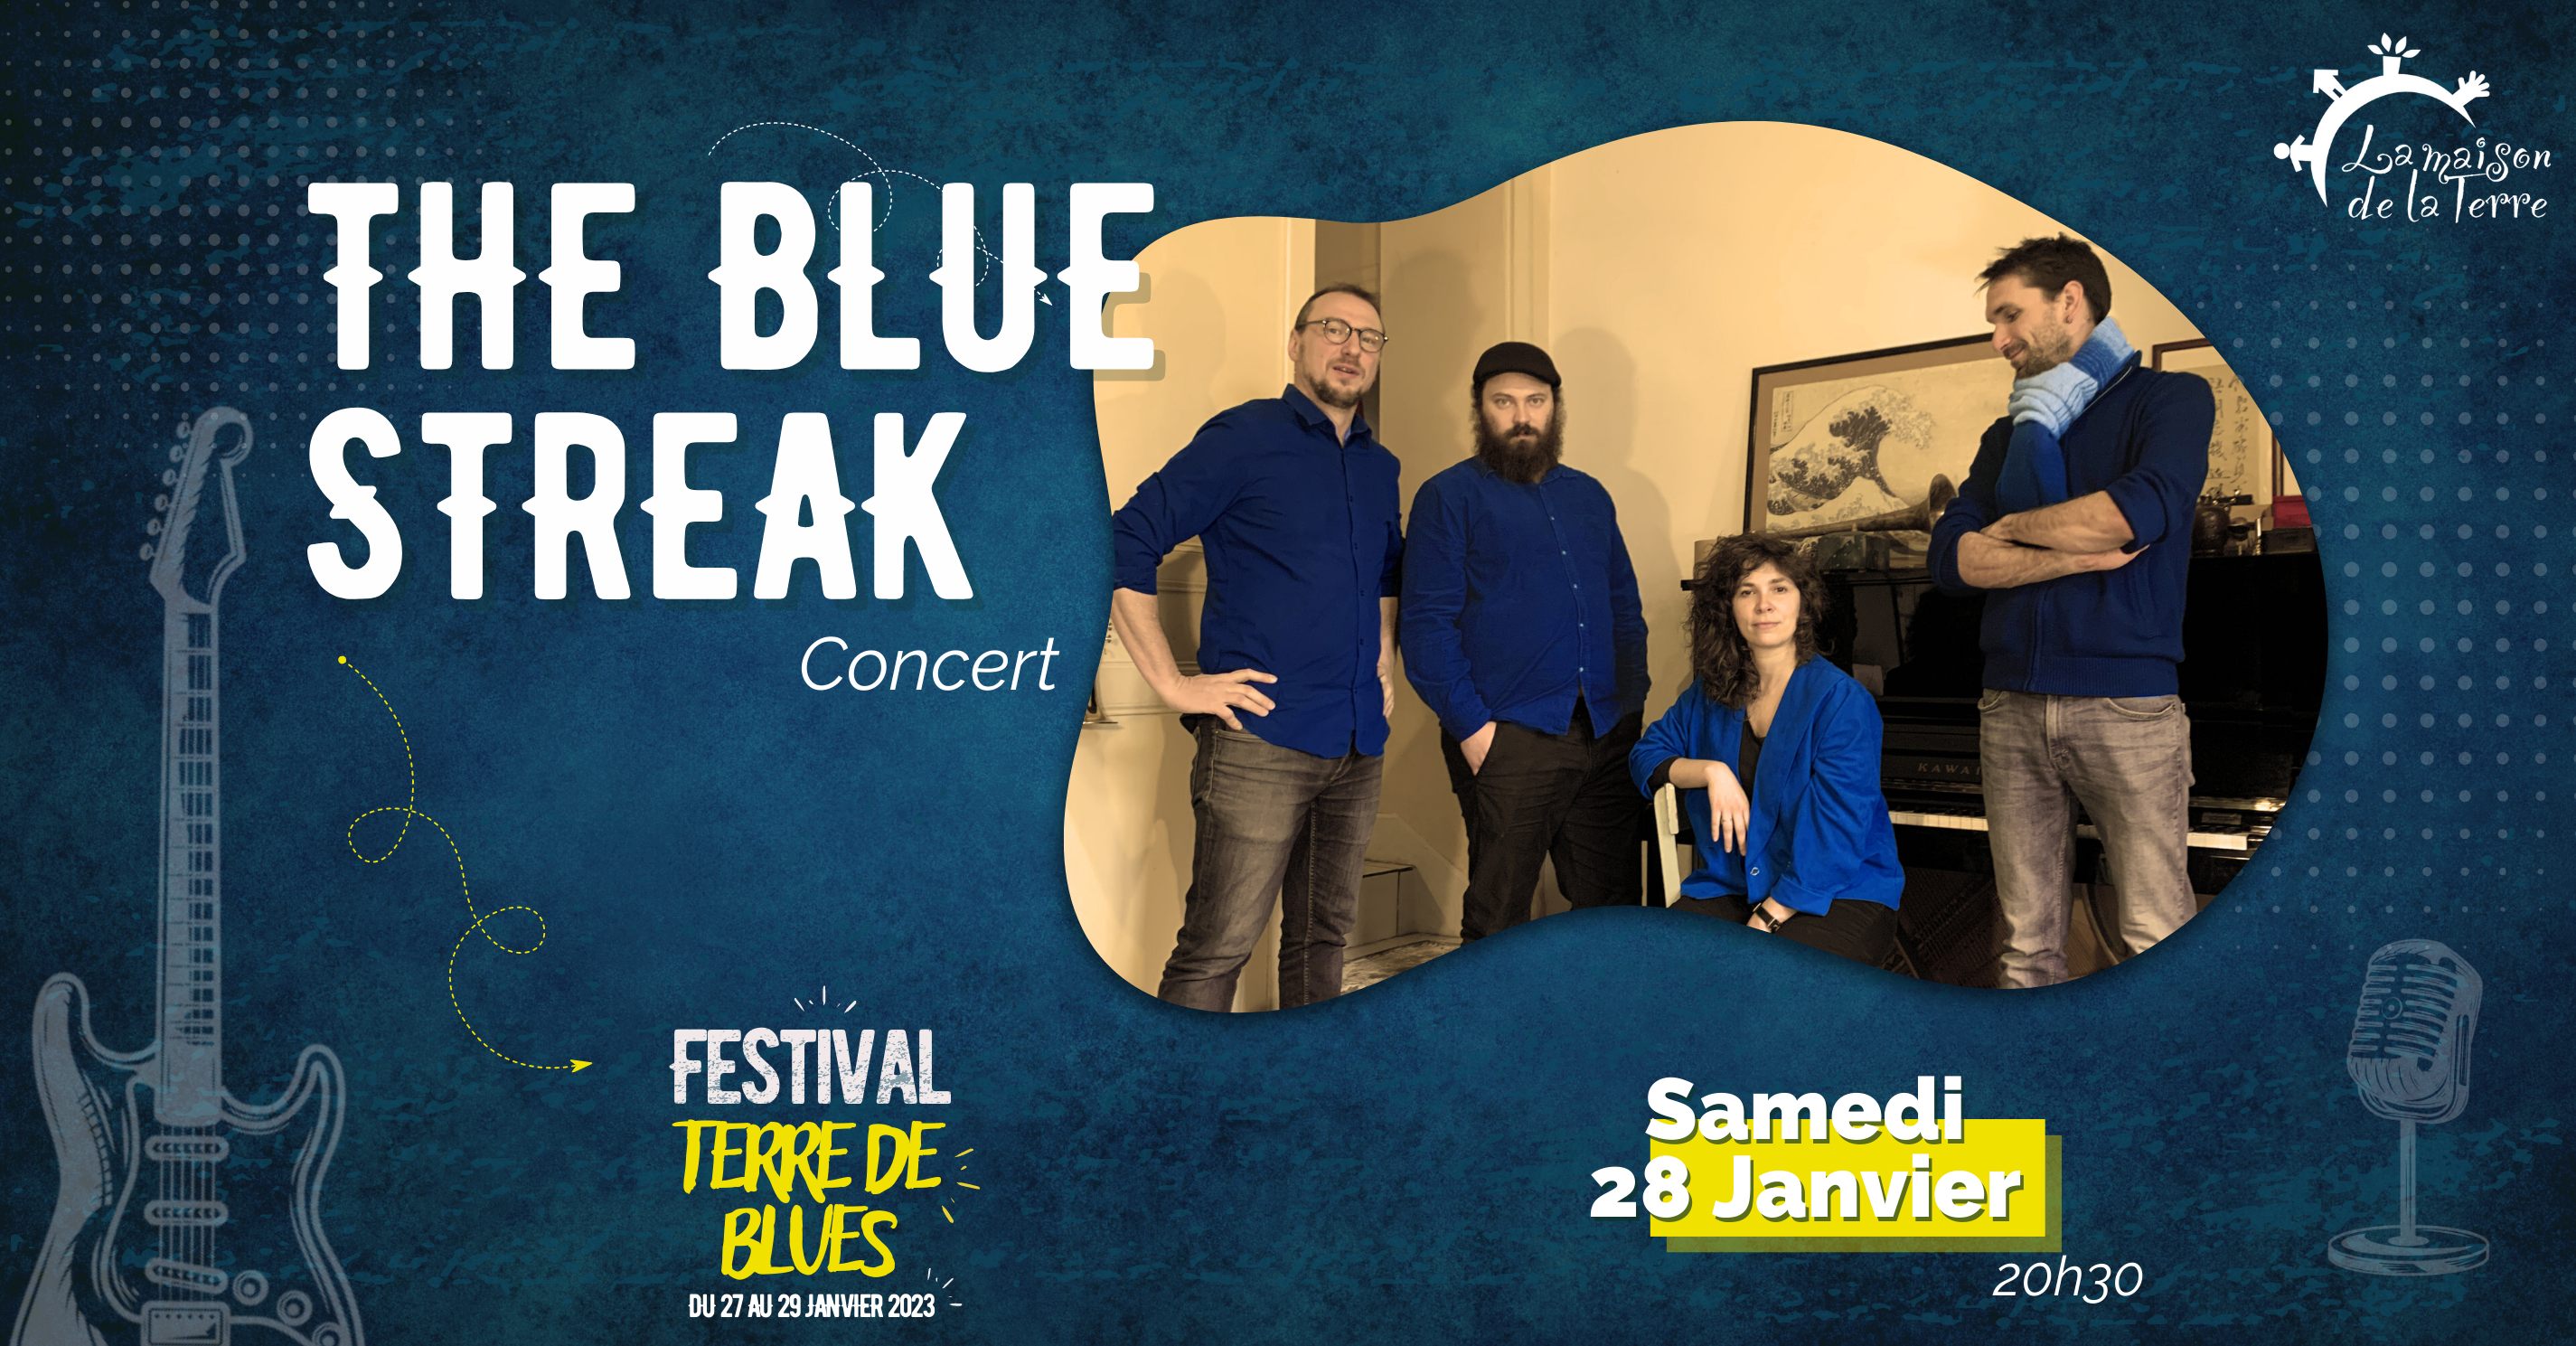 Concert, The Blue Streak, Samedi 28 janvier à 20H30